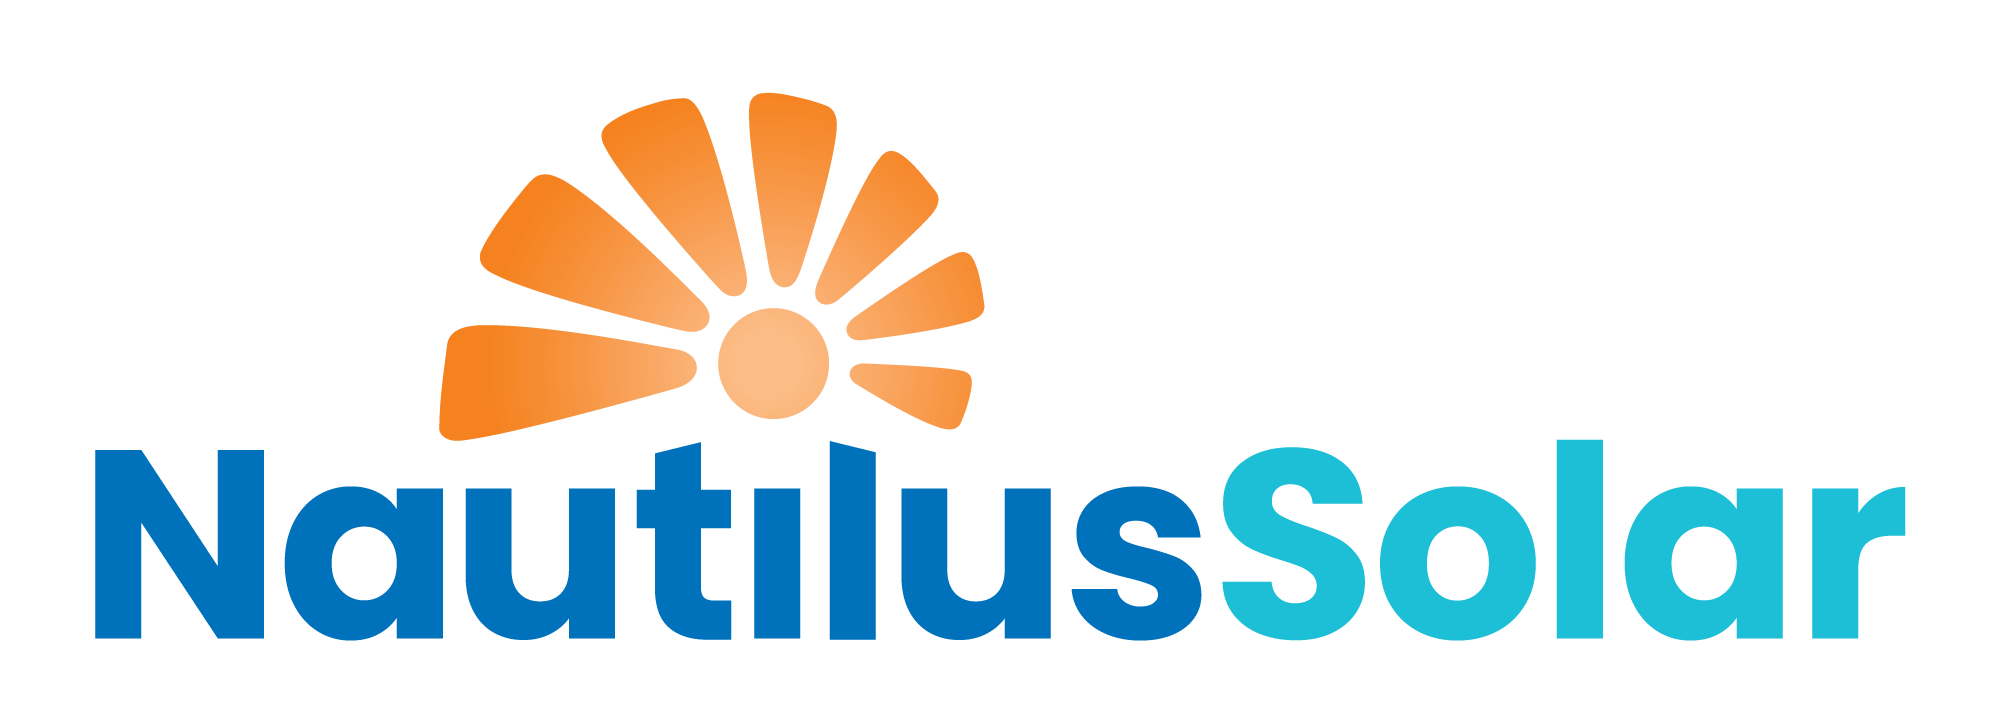 /assets/developer-logos/Nautilus-New-Logo.png